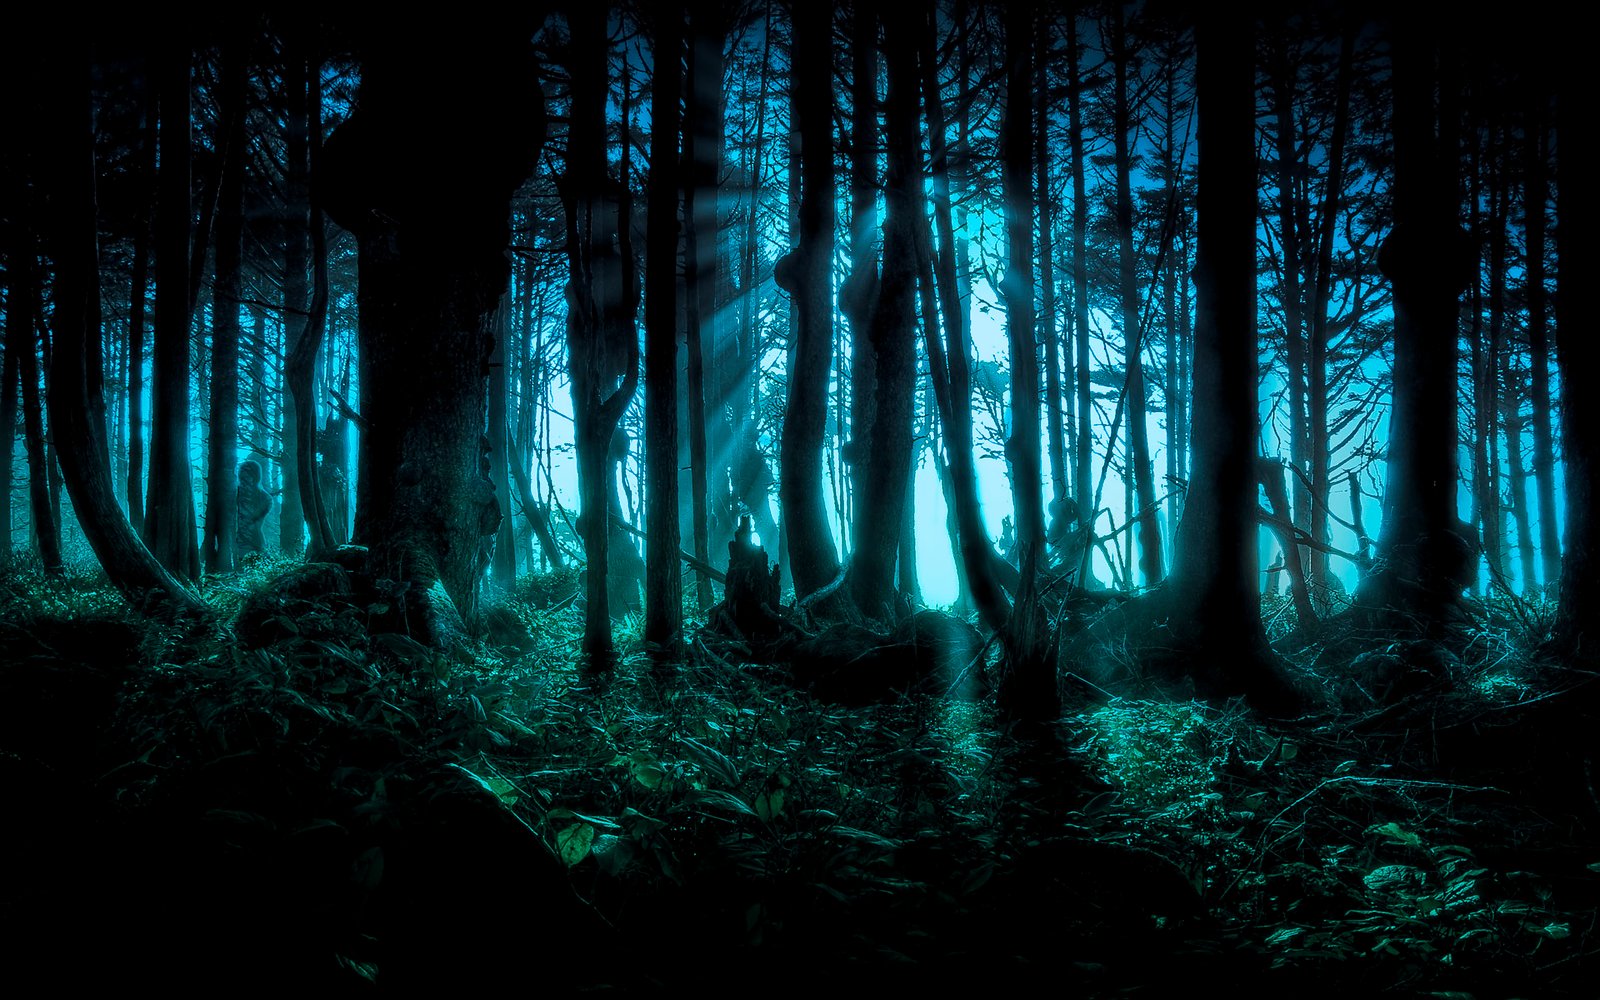 Woods in Darkness